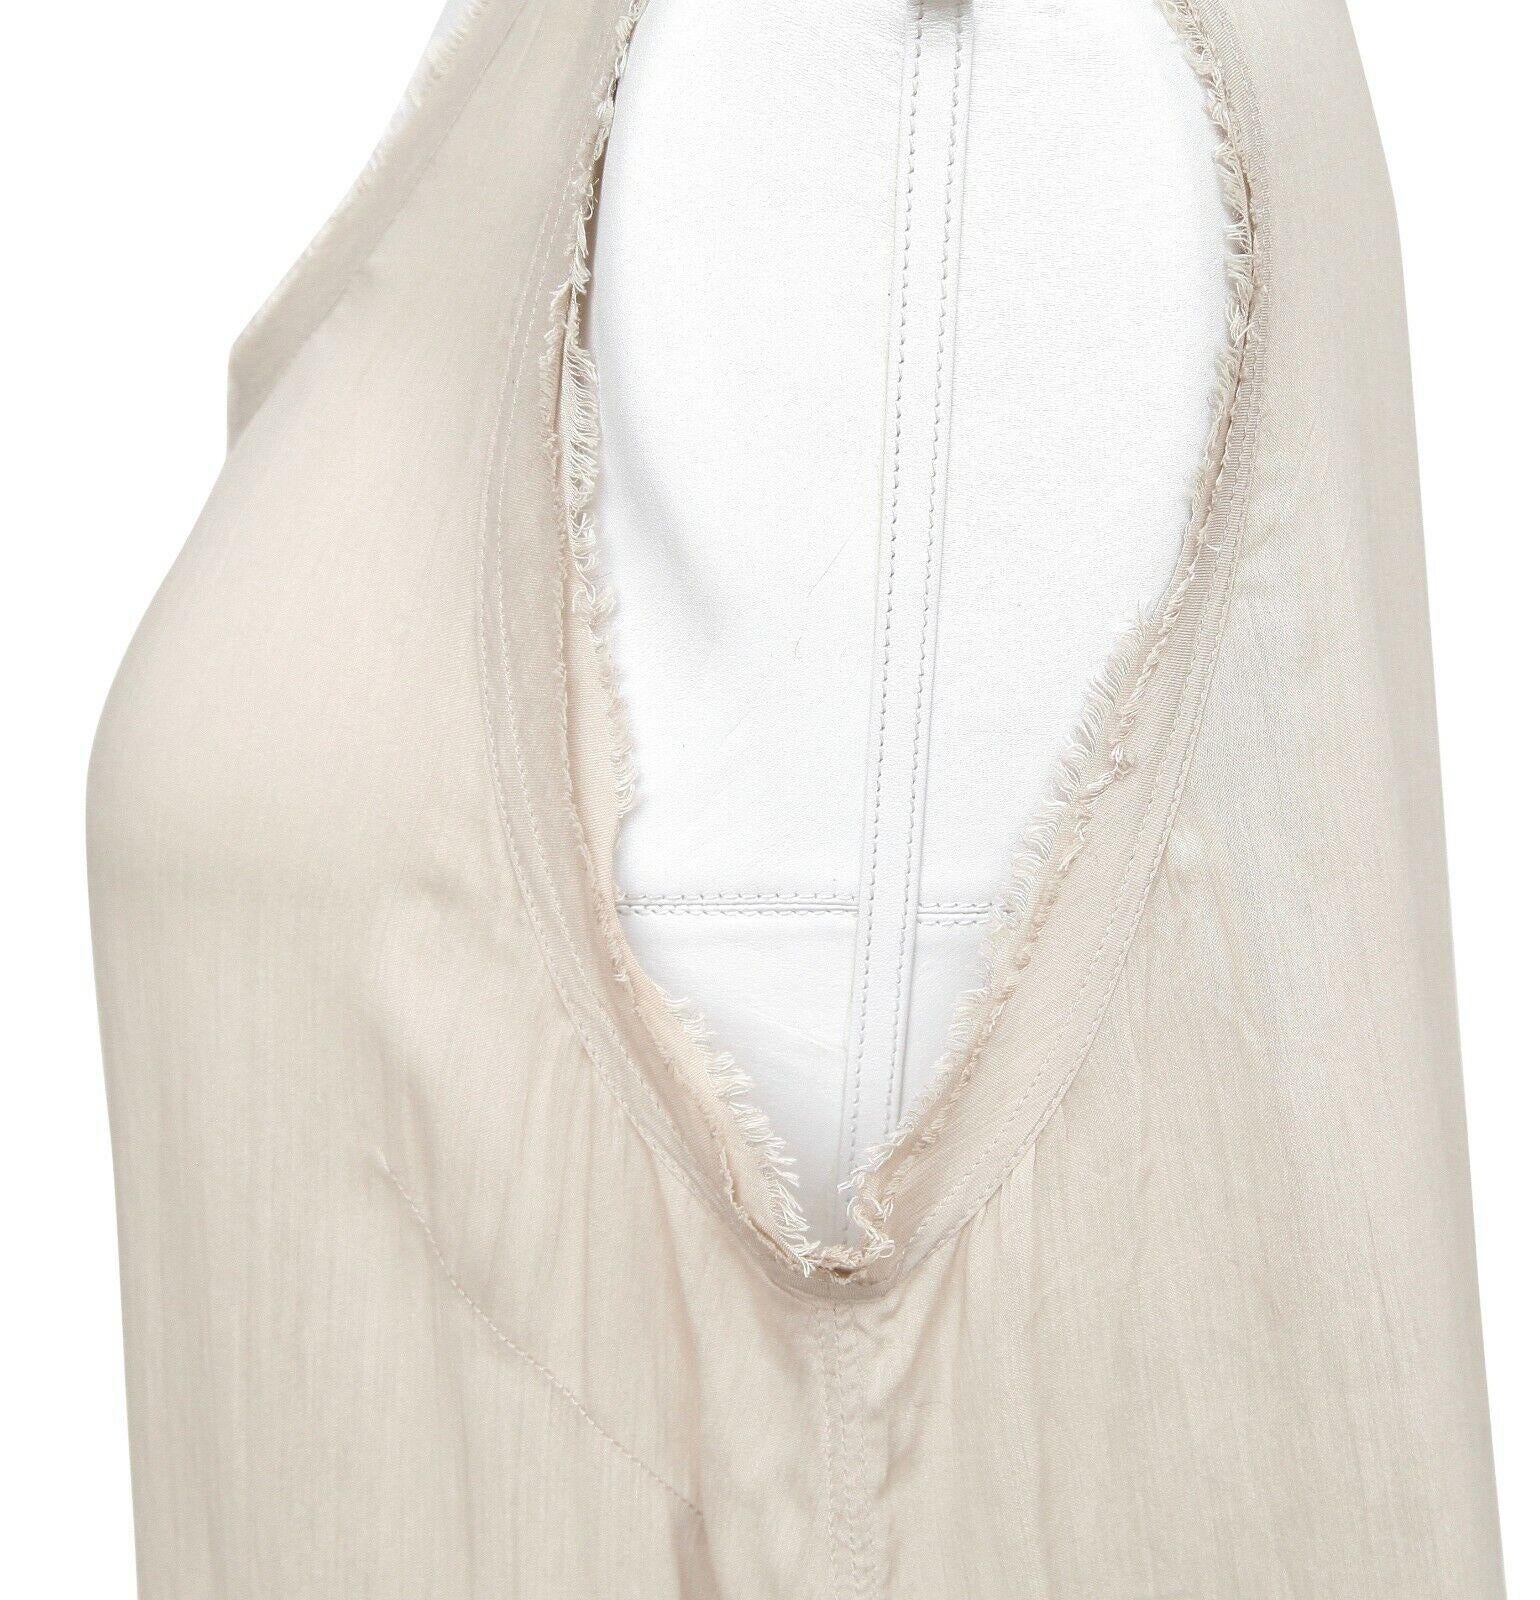 DOLCE & GABBANA Sleeveless Shirt Top Beige Buttons Viscose Silk Sz 42 For Sale 3